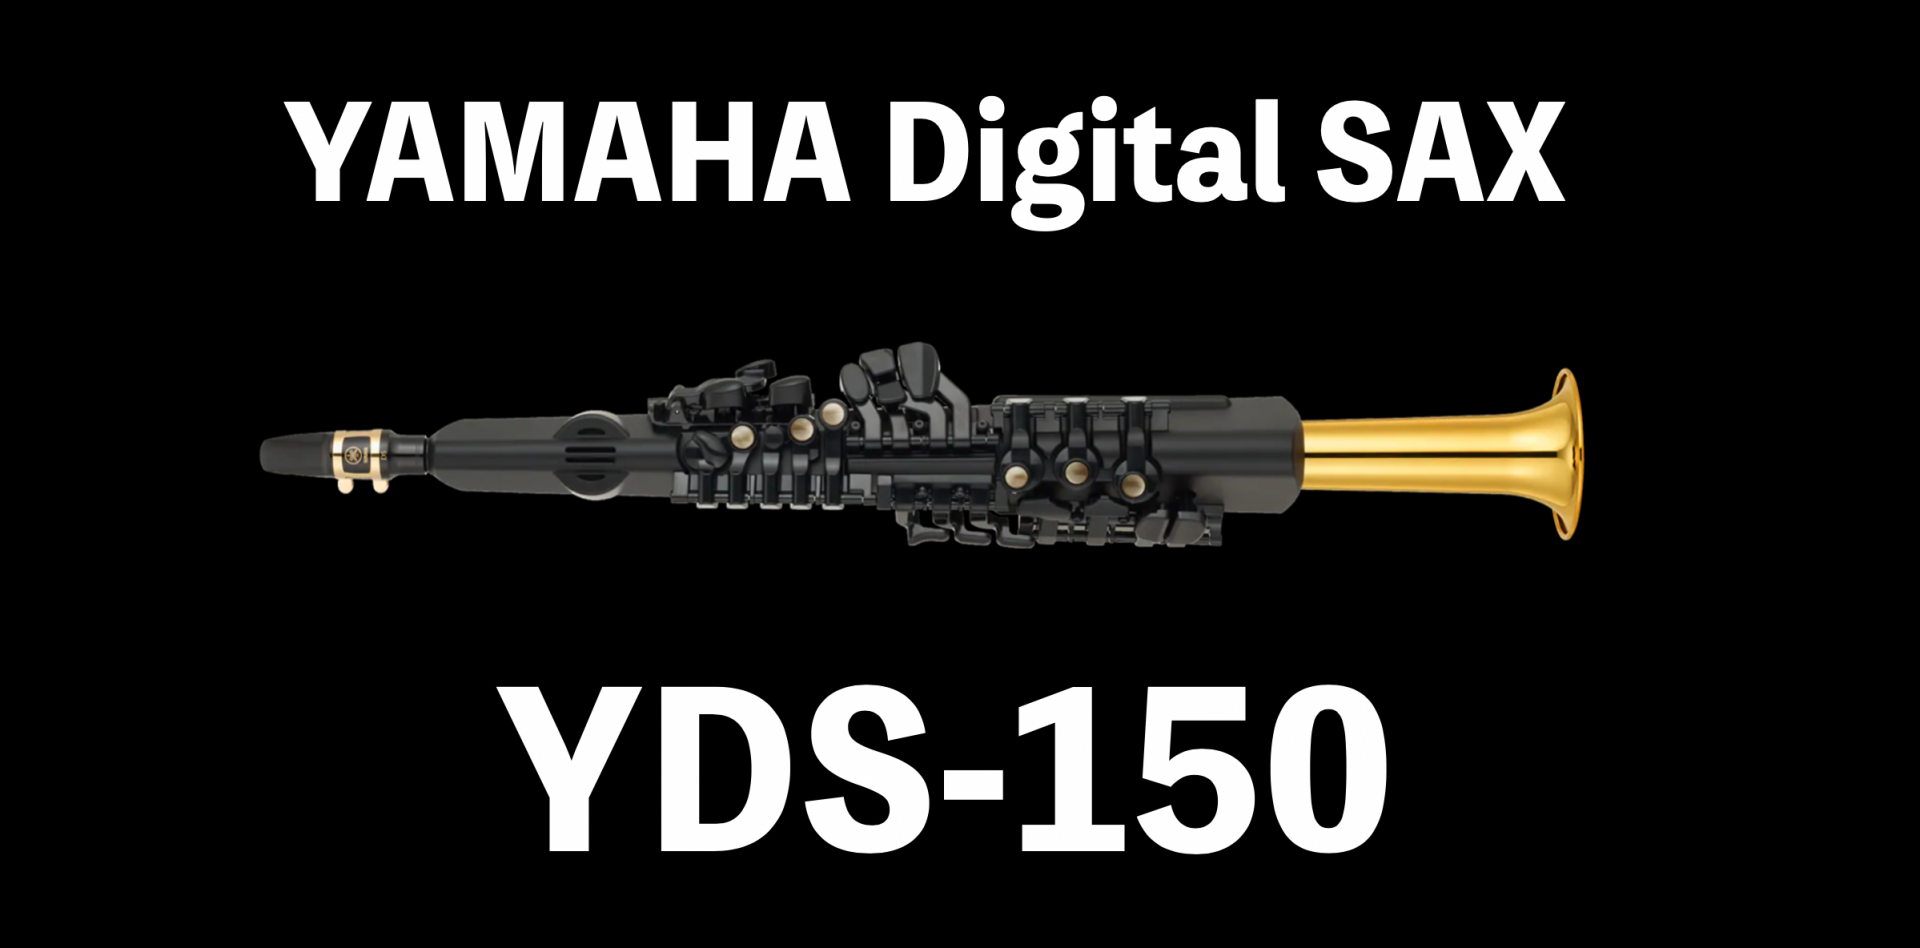 YAMAHAからデジタルサックスYDS-150が正式発表！11月20日発売開始です！